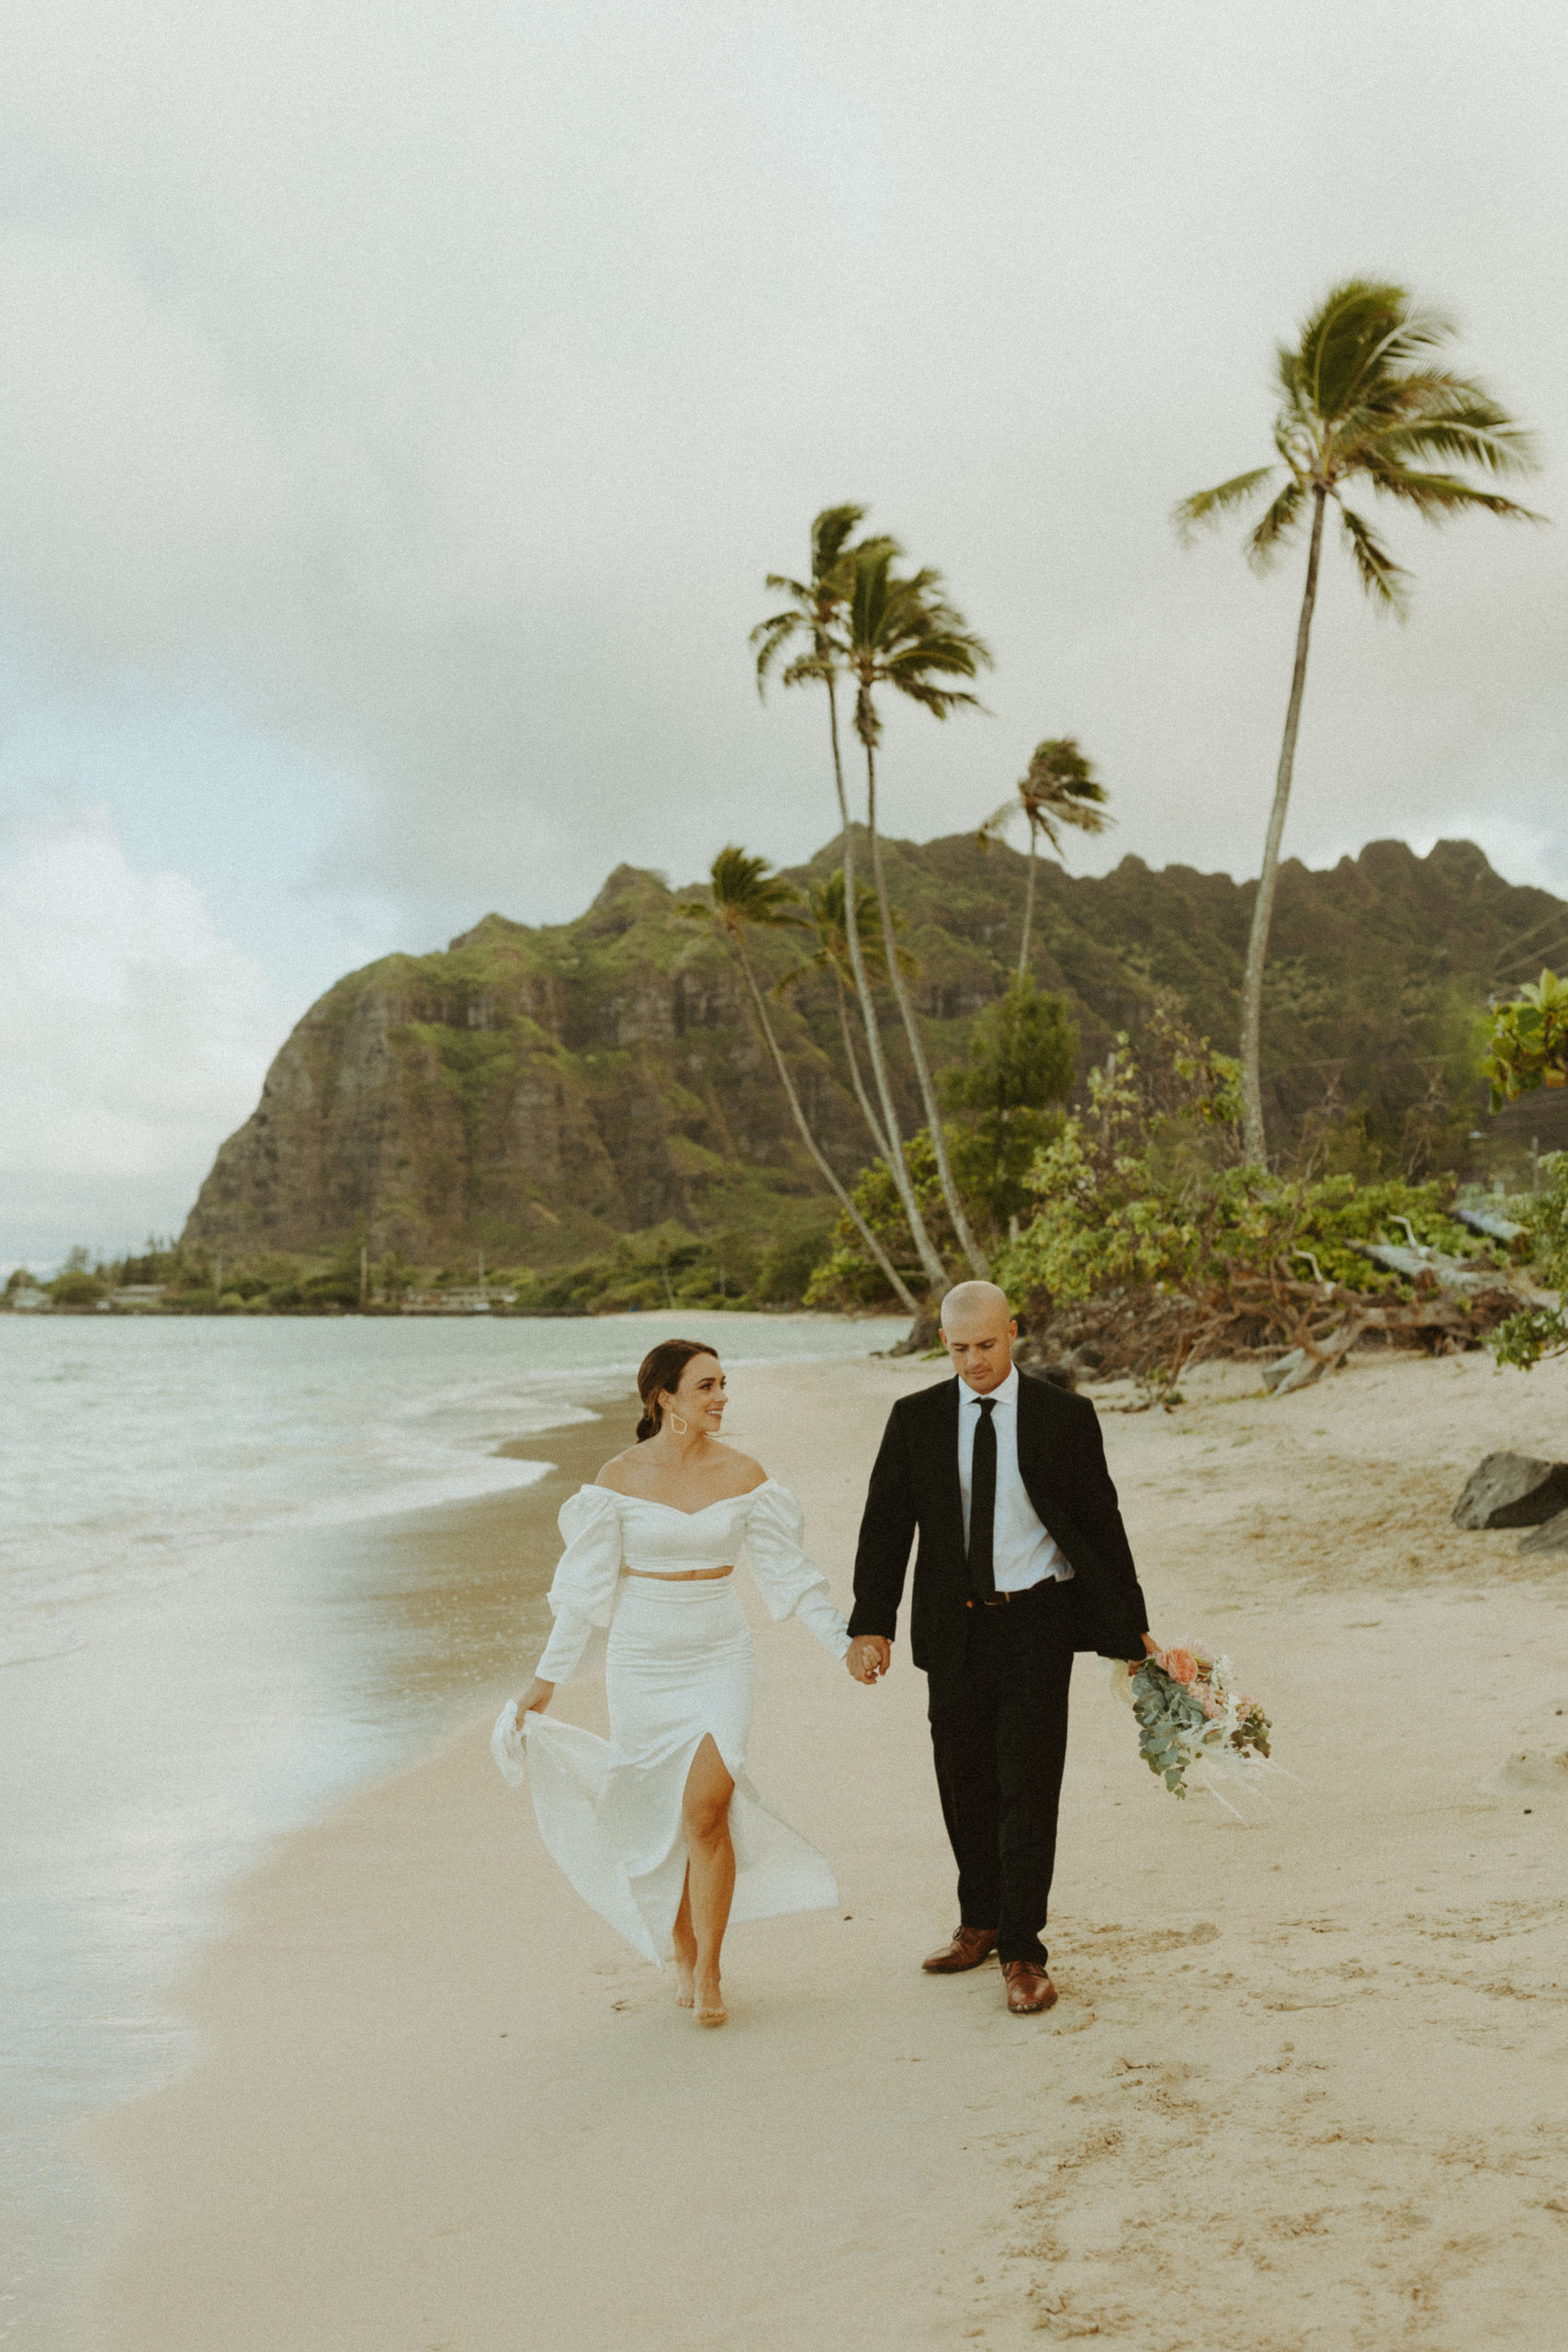 the couple walking down the beach at Kualoa Ranch in Oahu